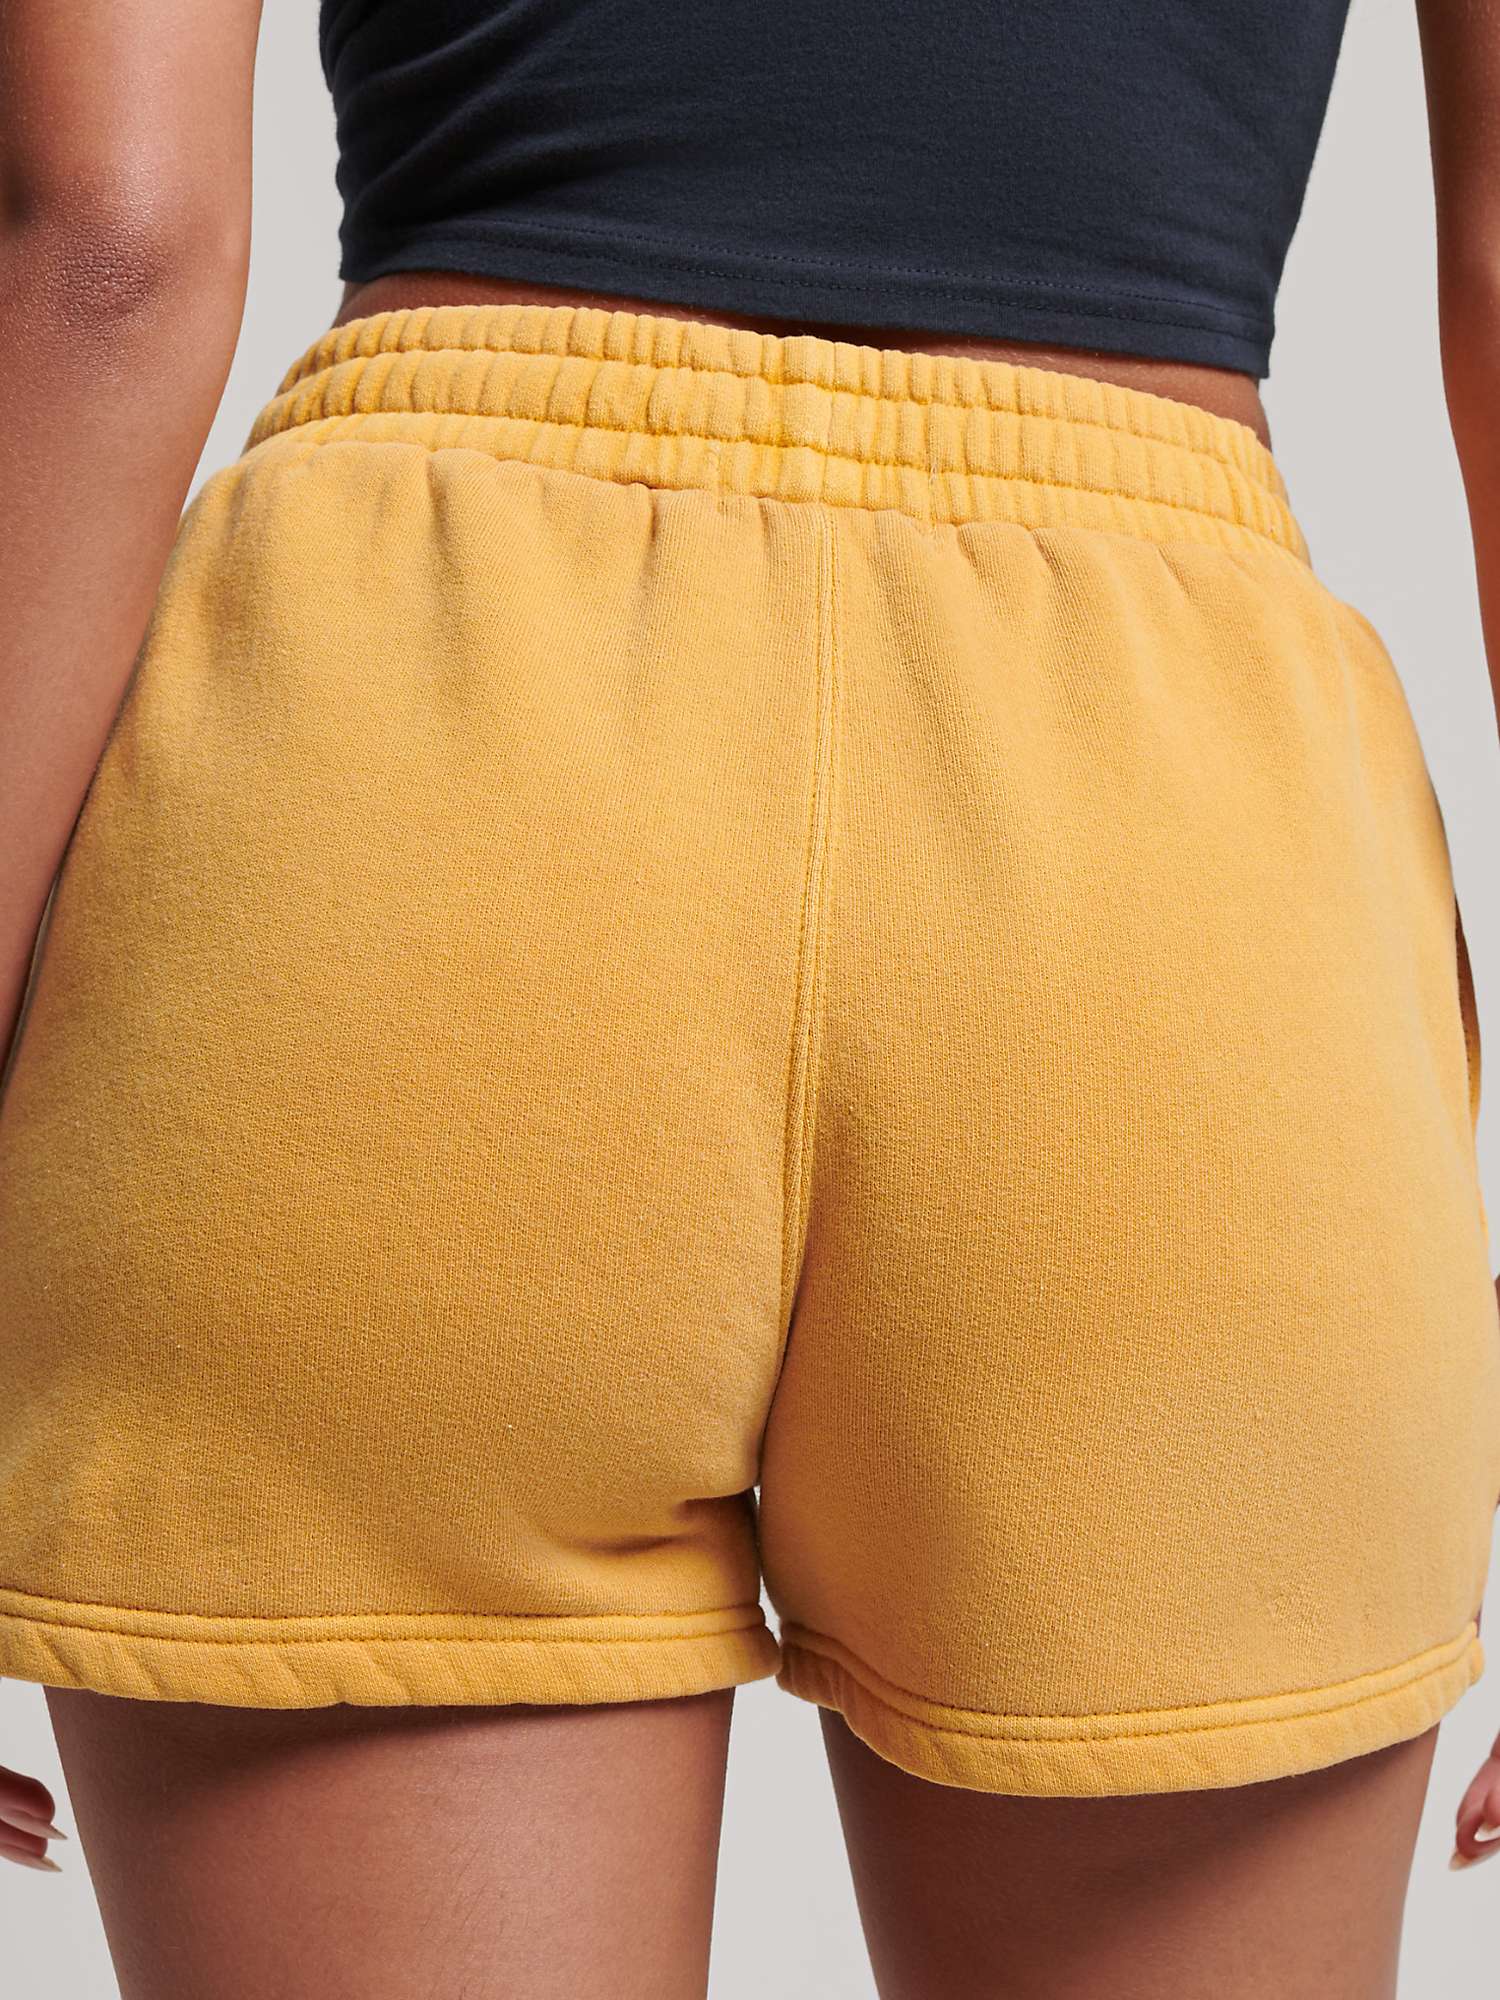 Buy Superdry Vintage Wash Sweat Shorts Online at johnlewis.com